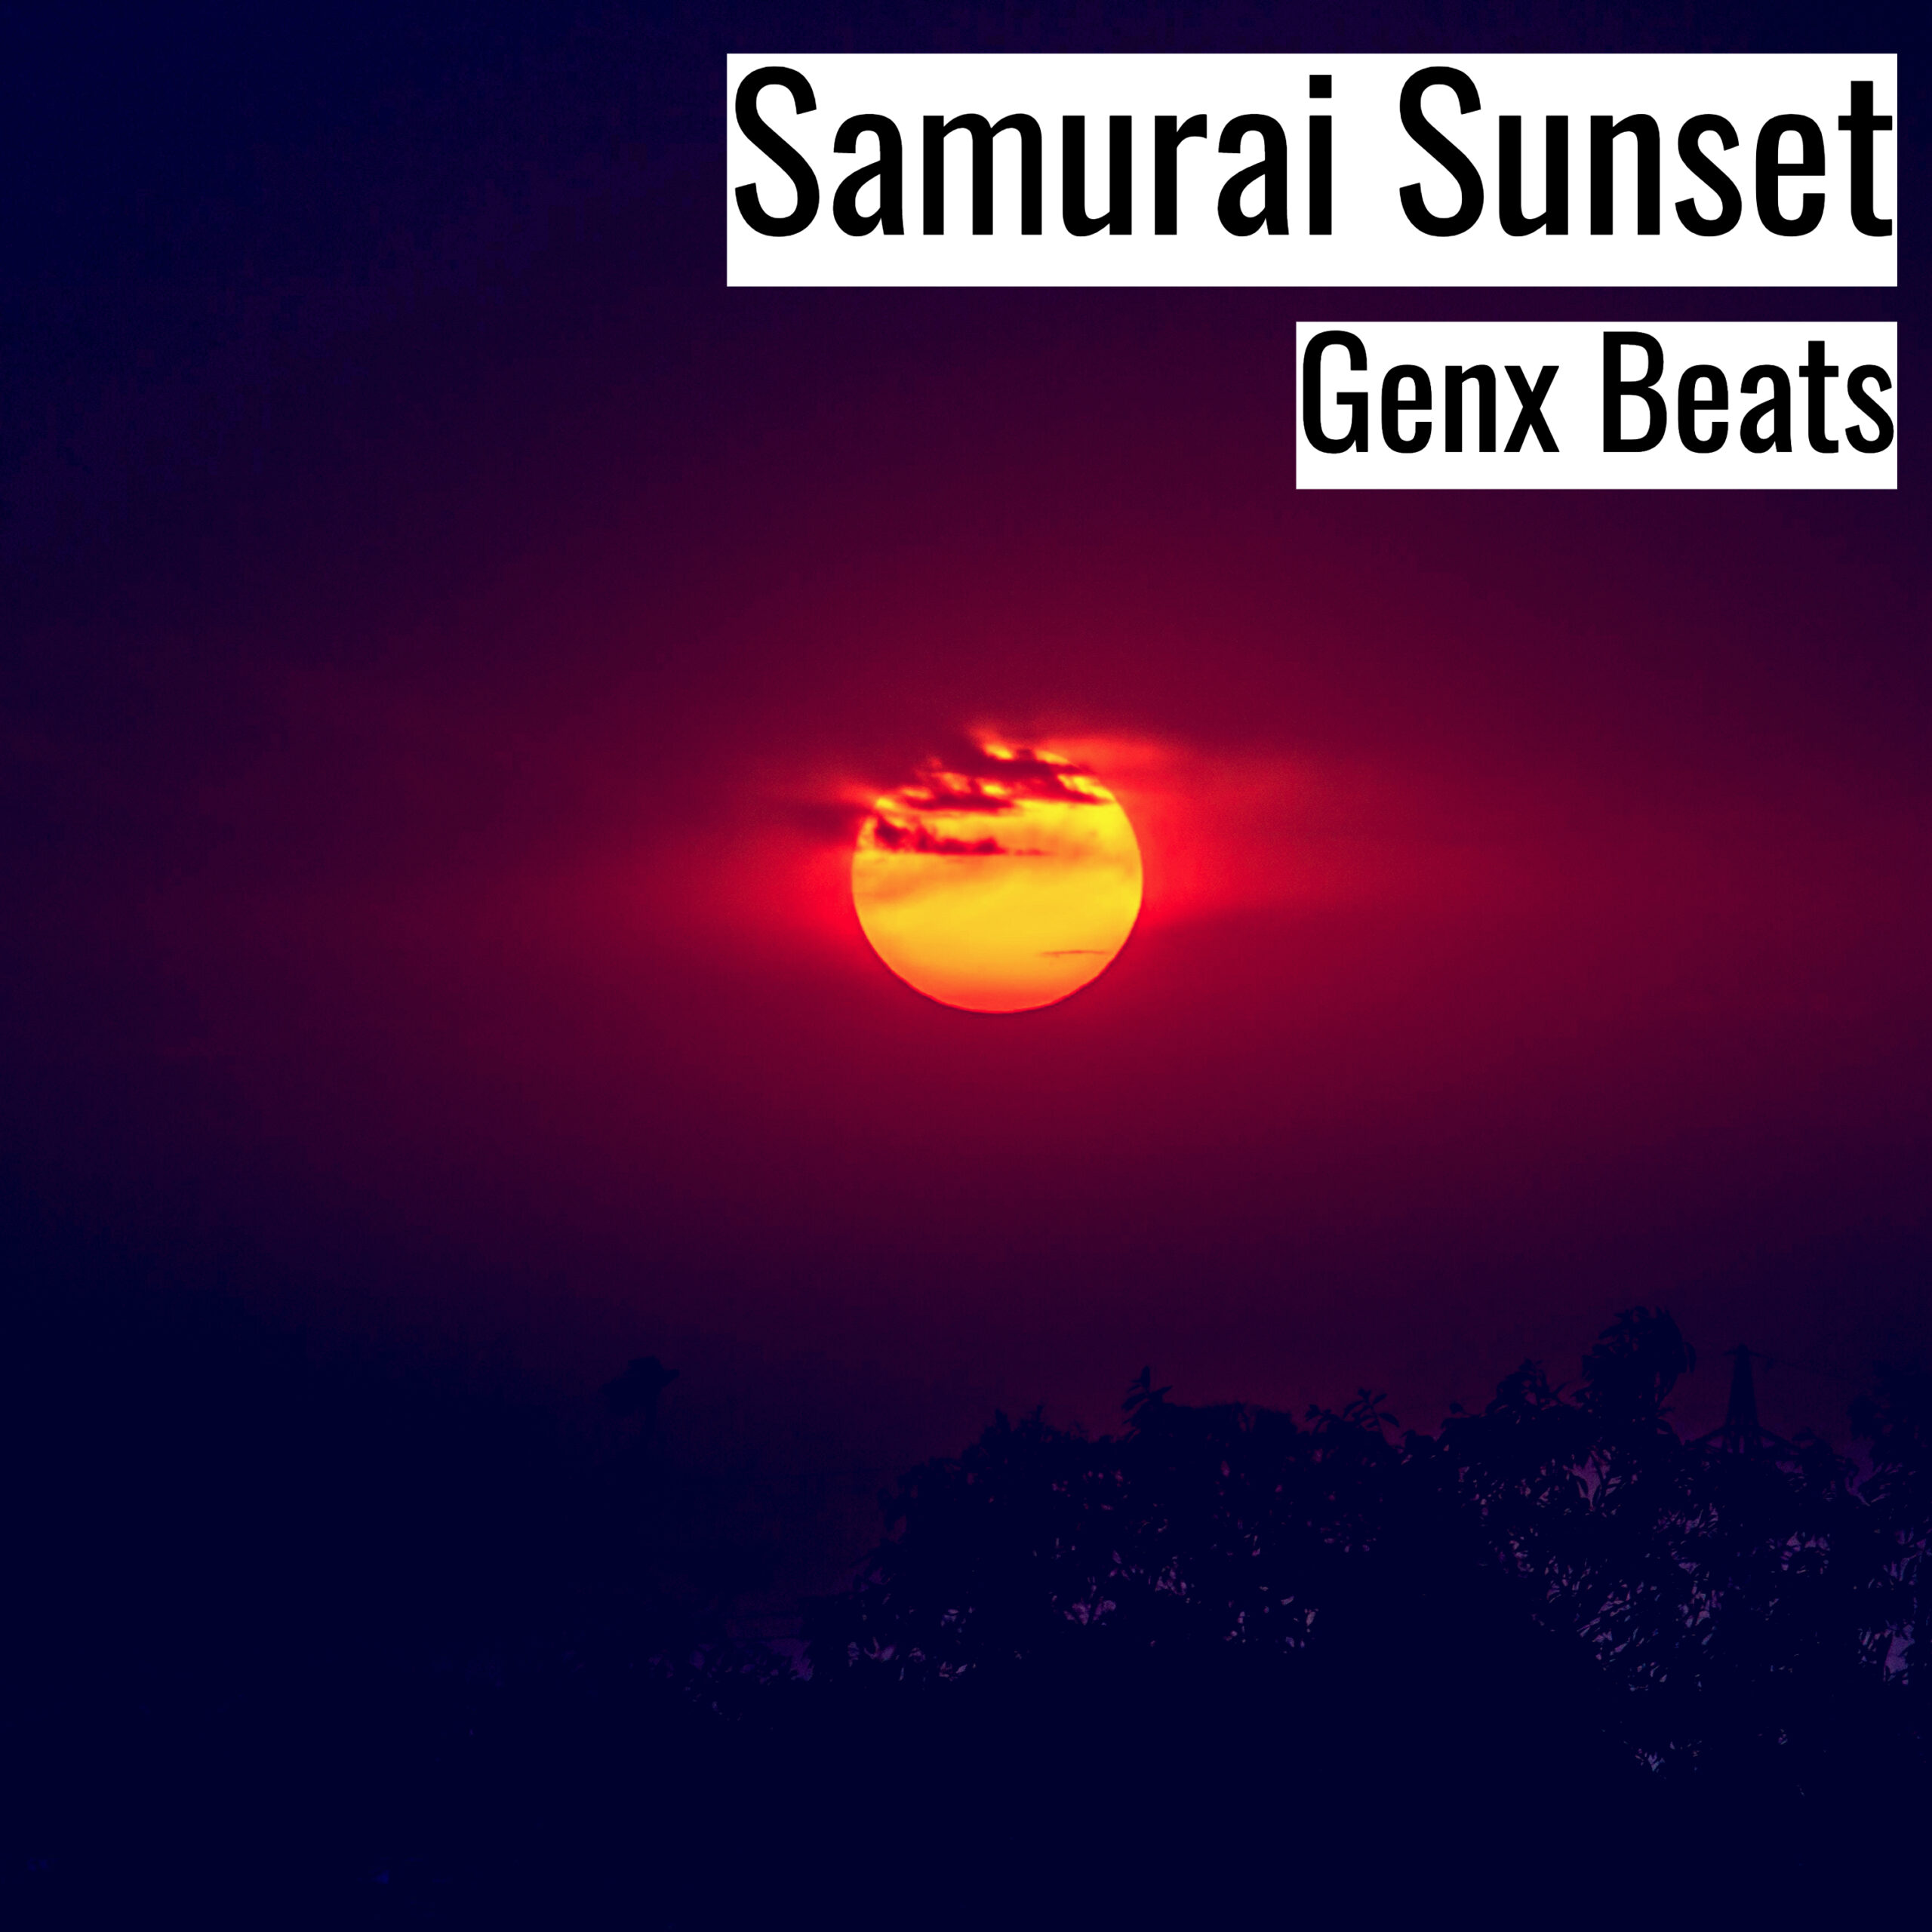 Samurai Sunset scaled